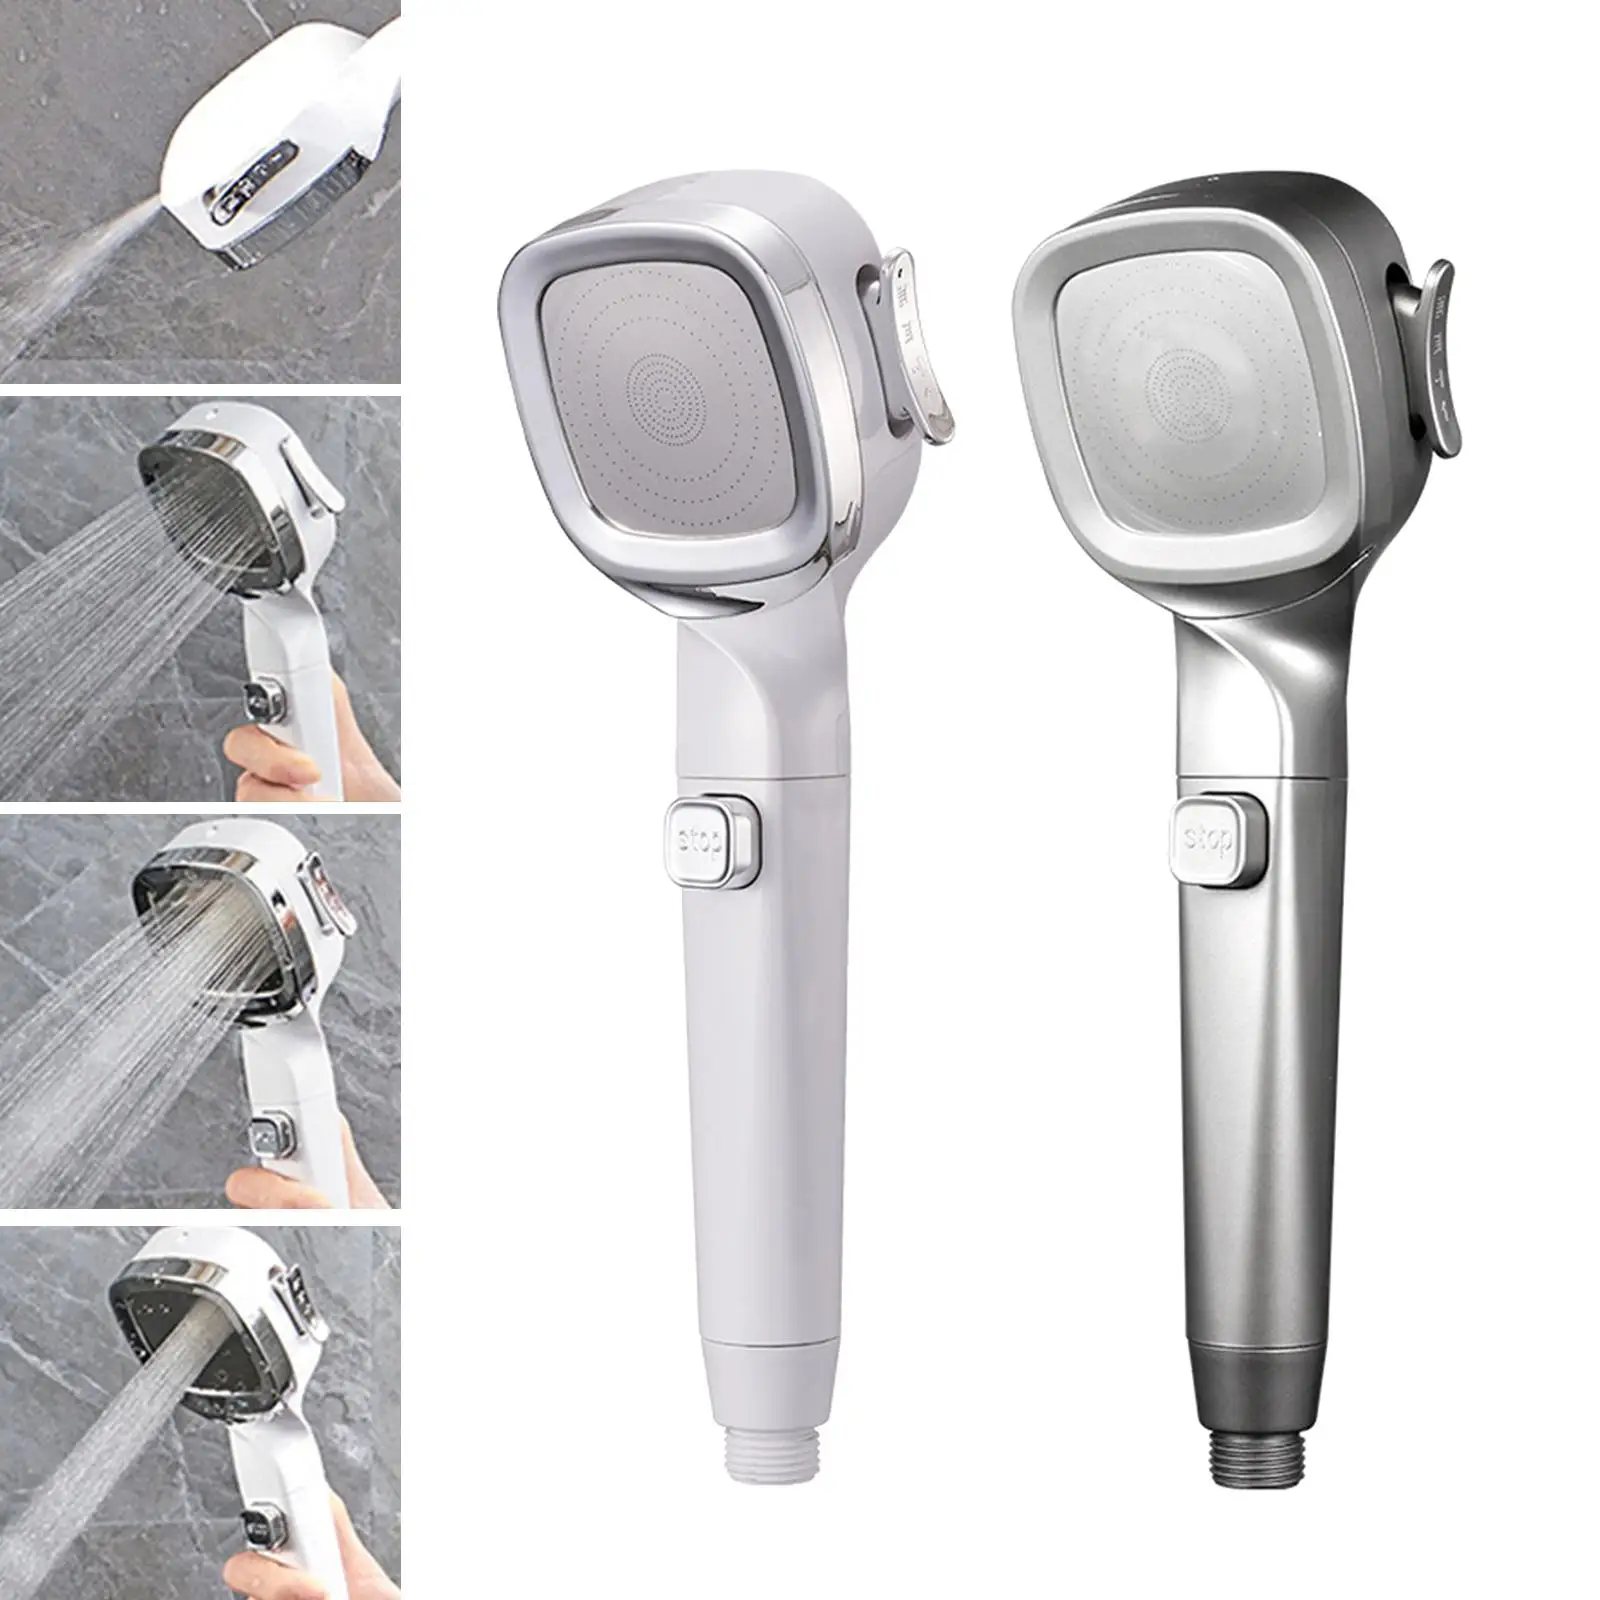 High Pressure Shower Heads Water Saving Pressurized 4 Modes Handheld Spray Sprayer for Club Hair Washing Massage Toilet Bathroom